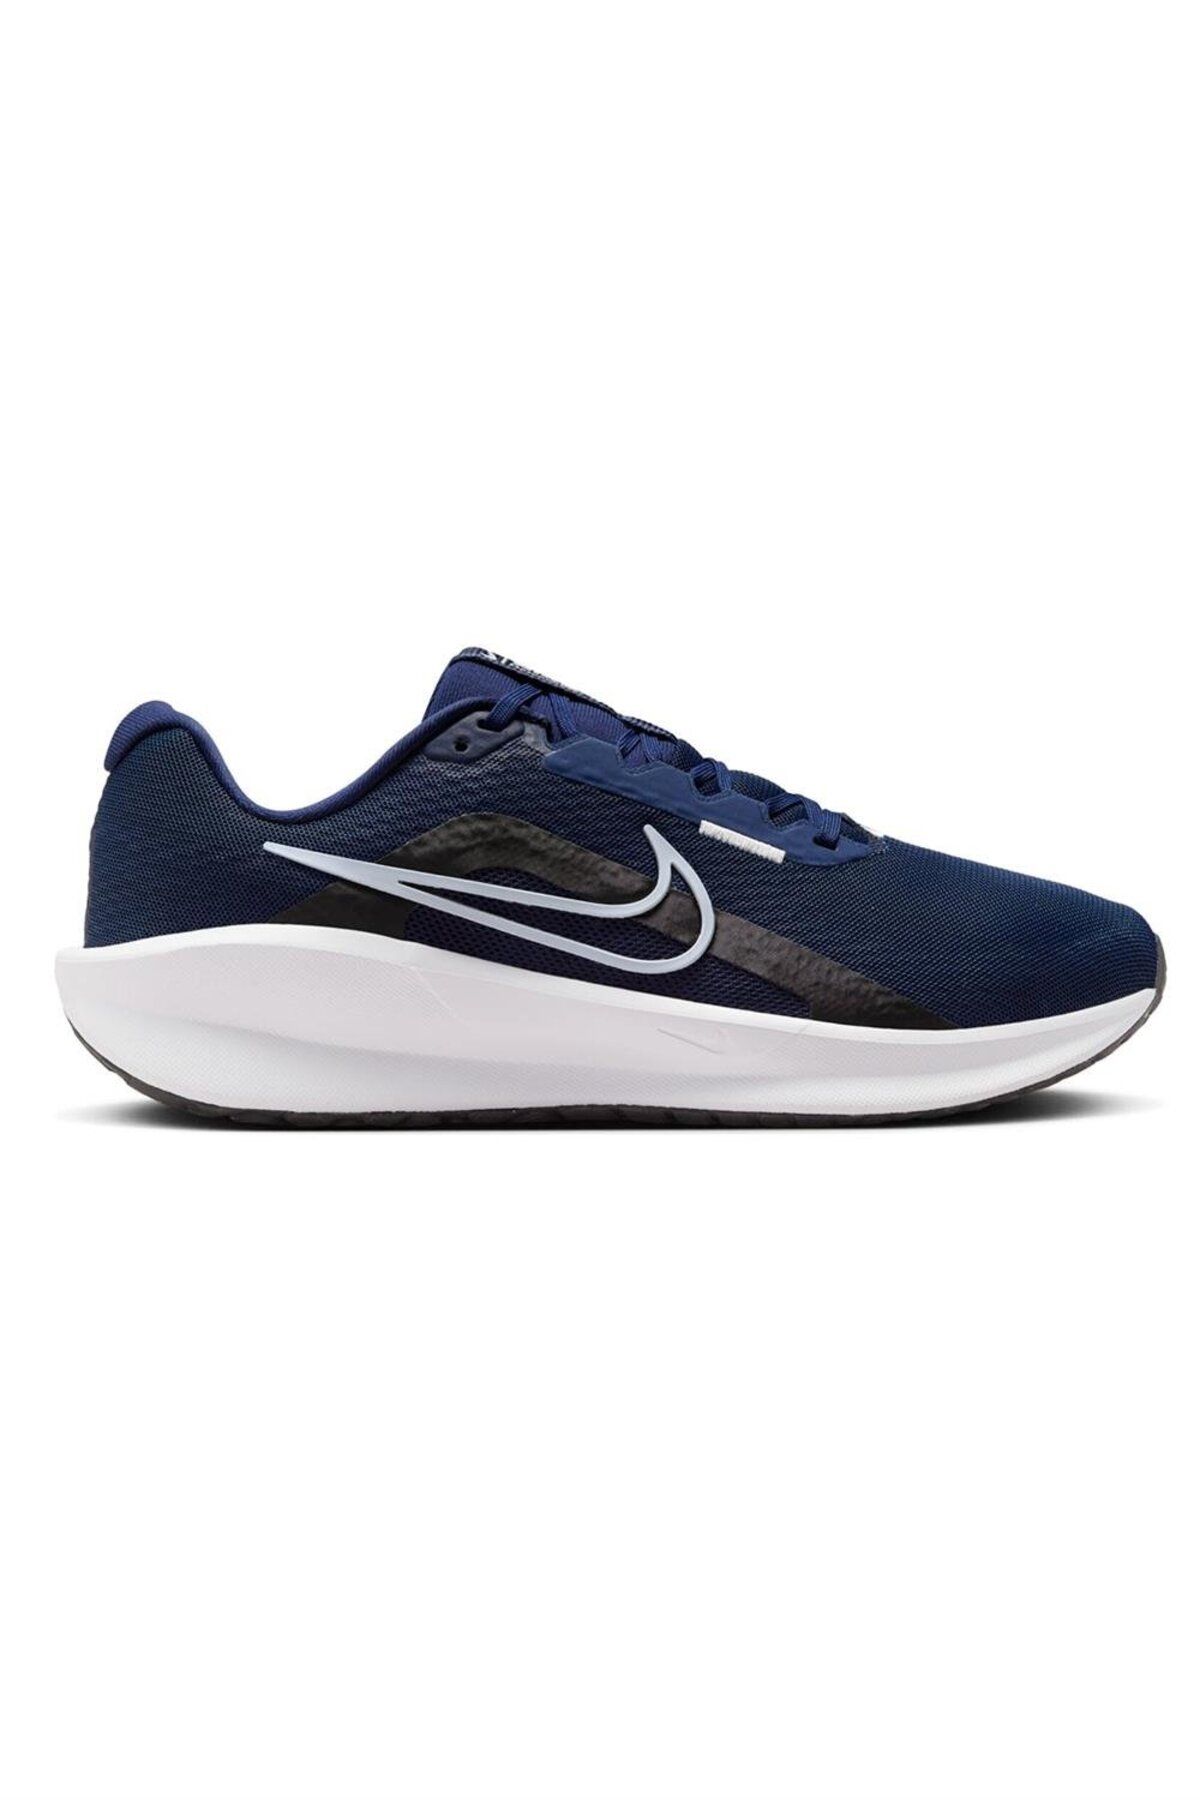 Nike Downshıfter 13 Erkek Koşu Ayakkabısı Fd6454-400